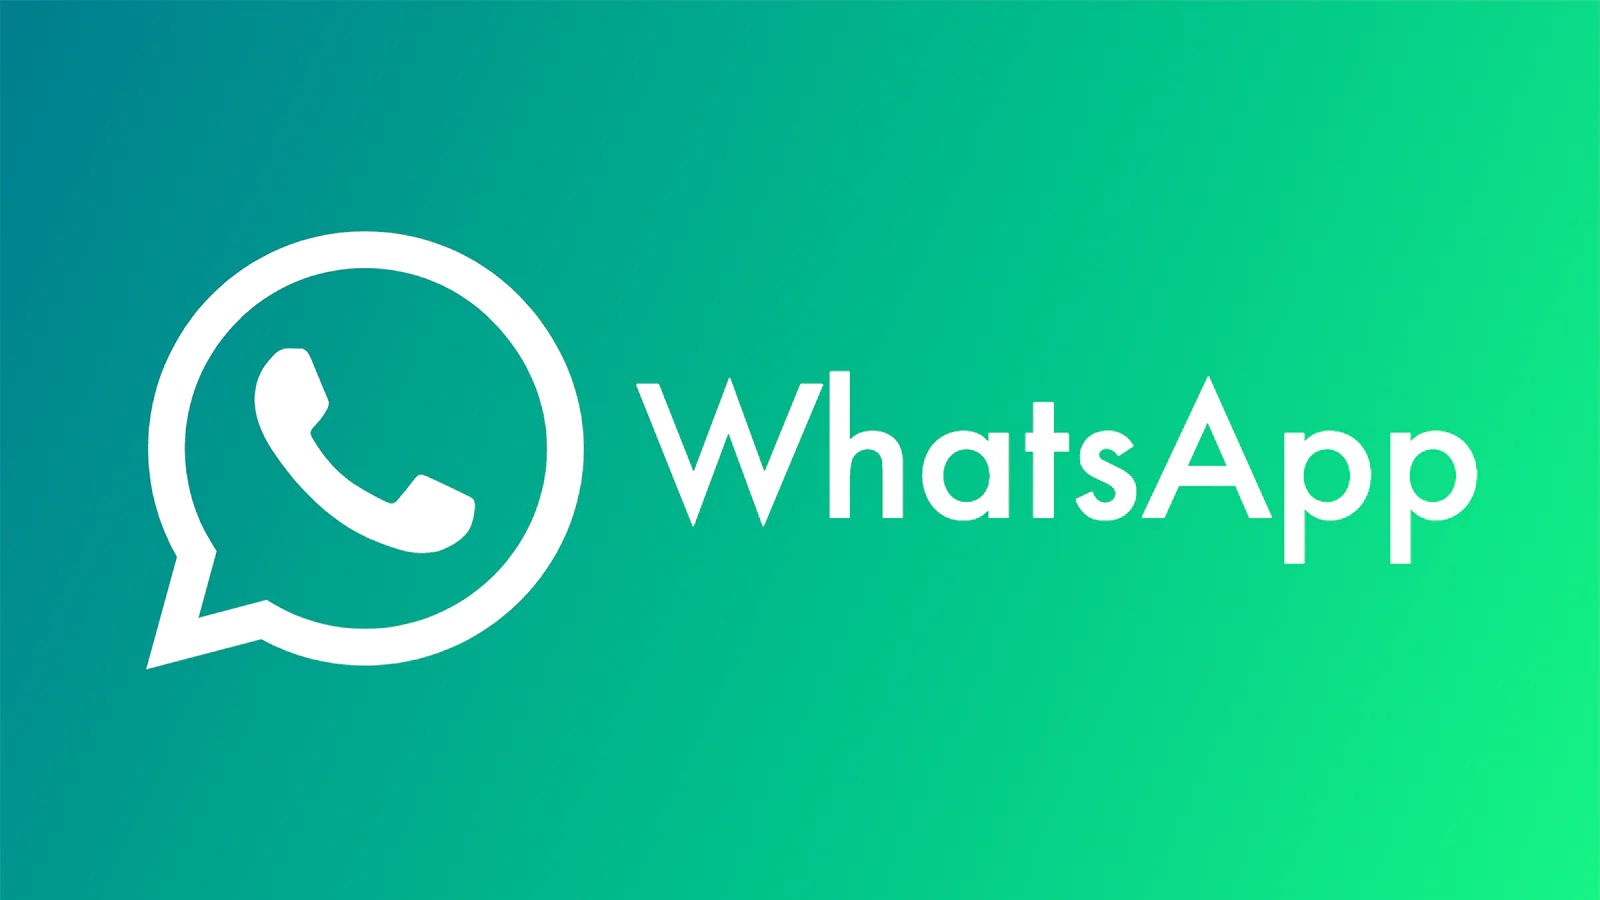 WhatsApp har offisielt avduket sin nye navigasjonslinje.